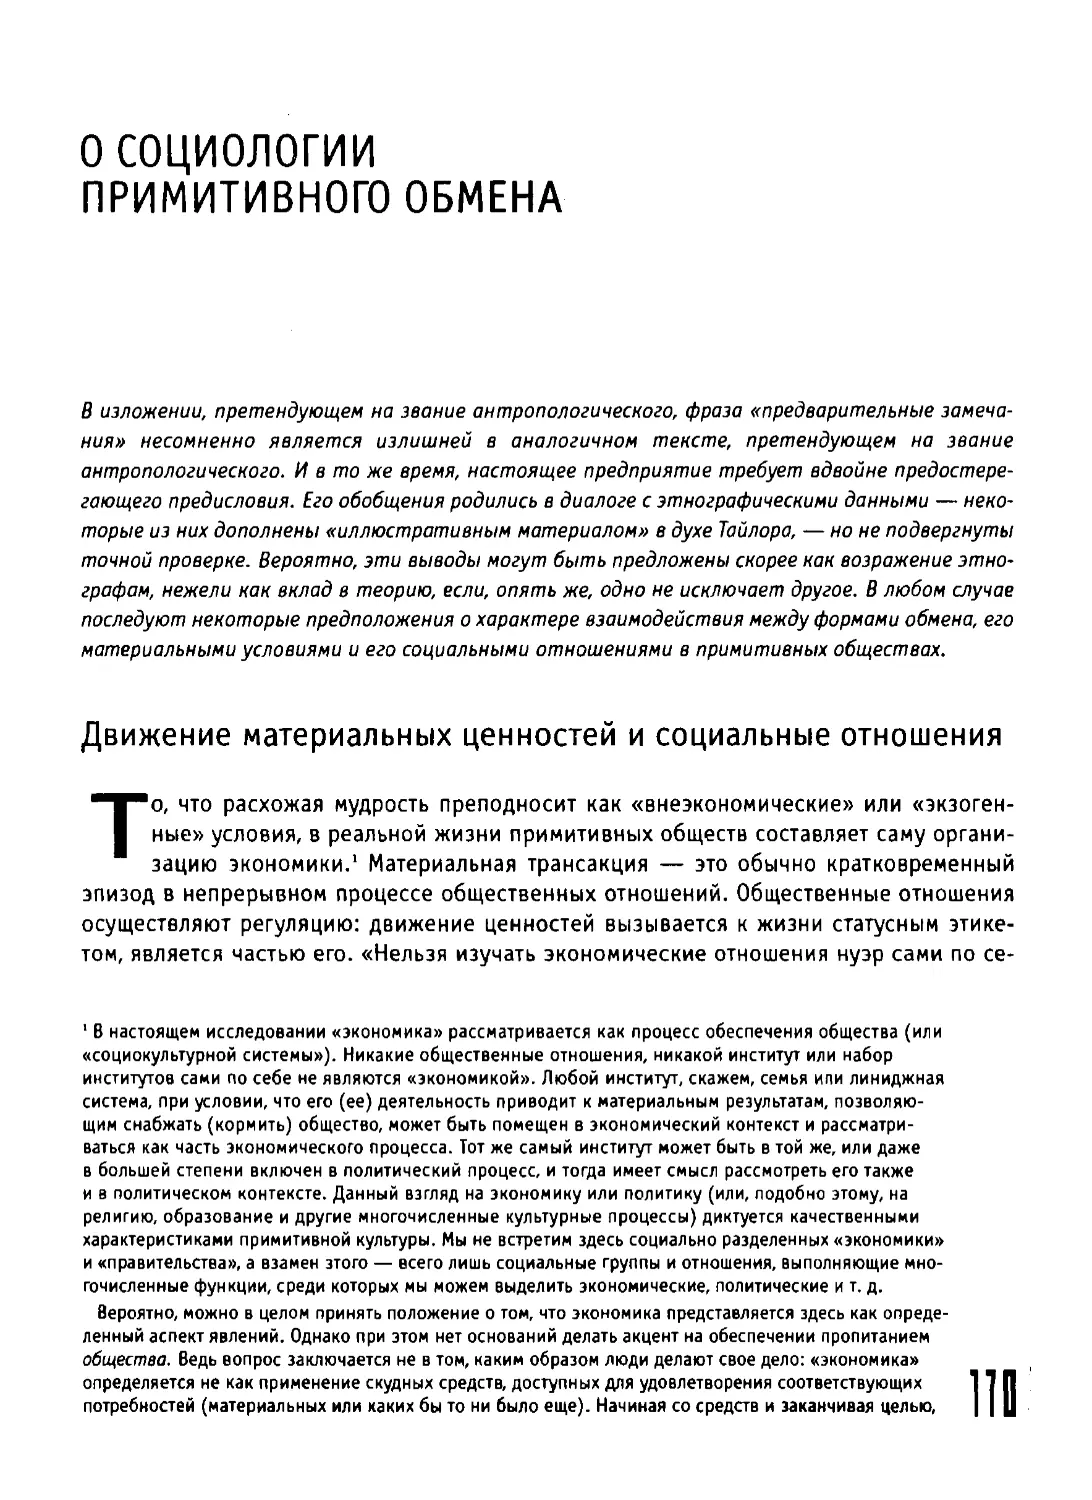 О cоциологии примитивного обмена.pdf